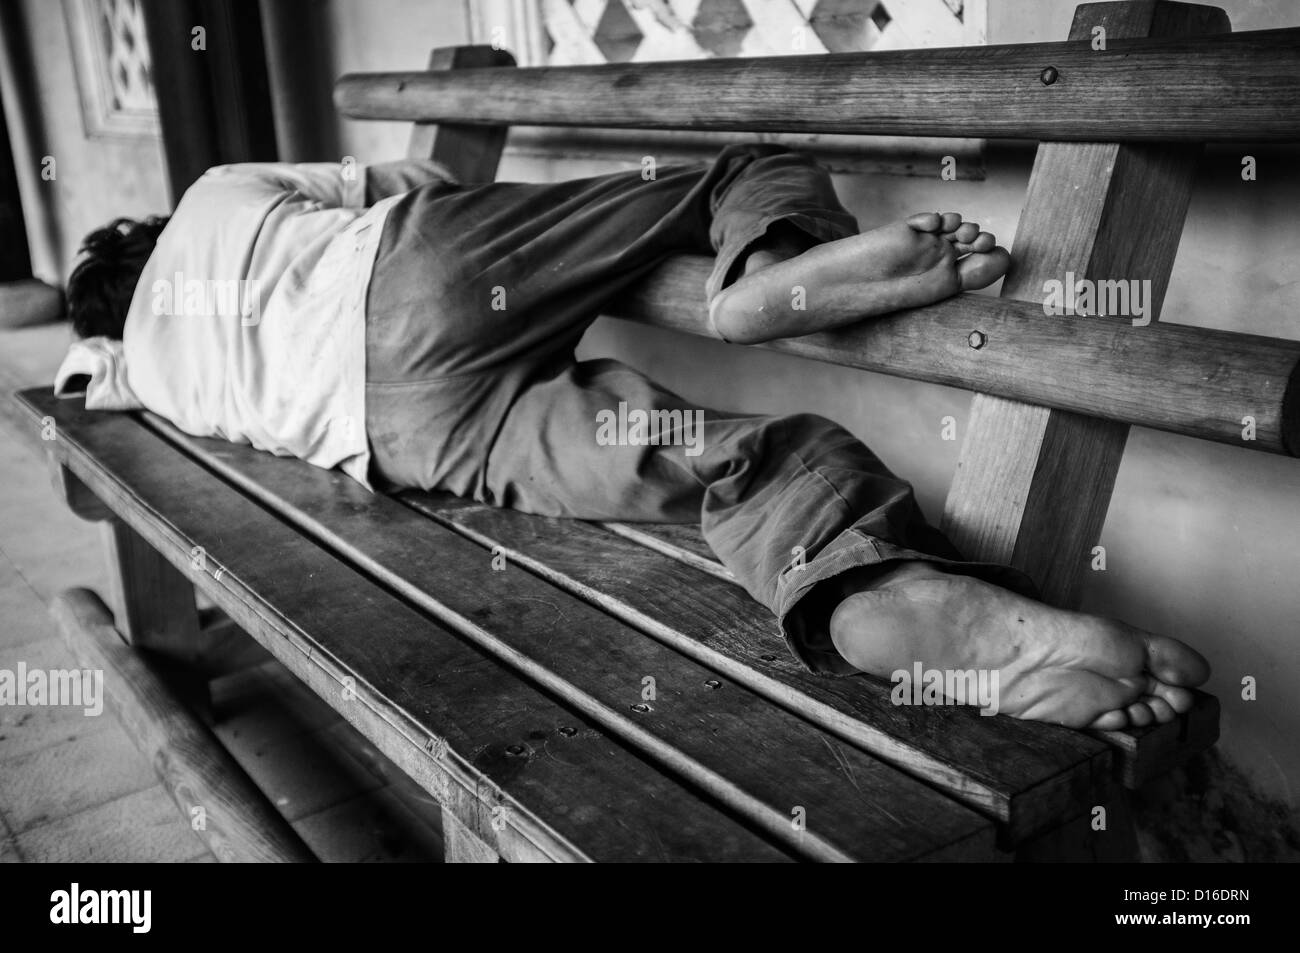 Homme nu dormant sur un banc en bois Banque D'Images